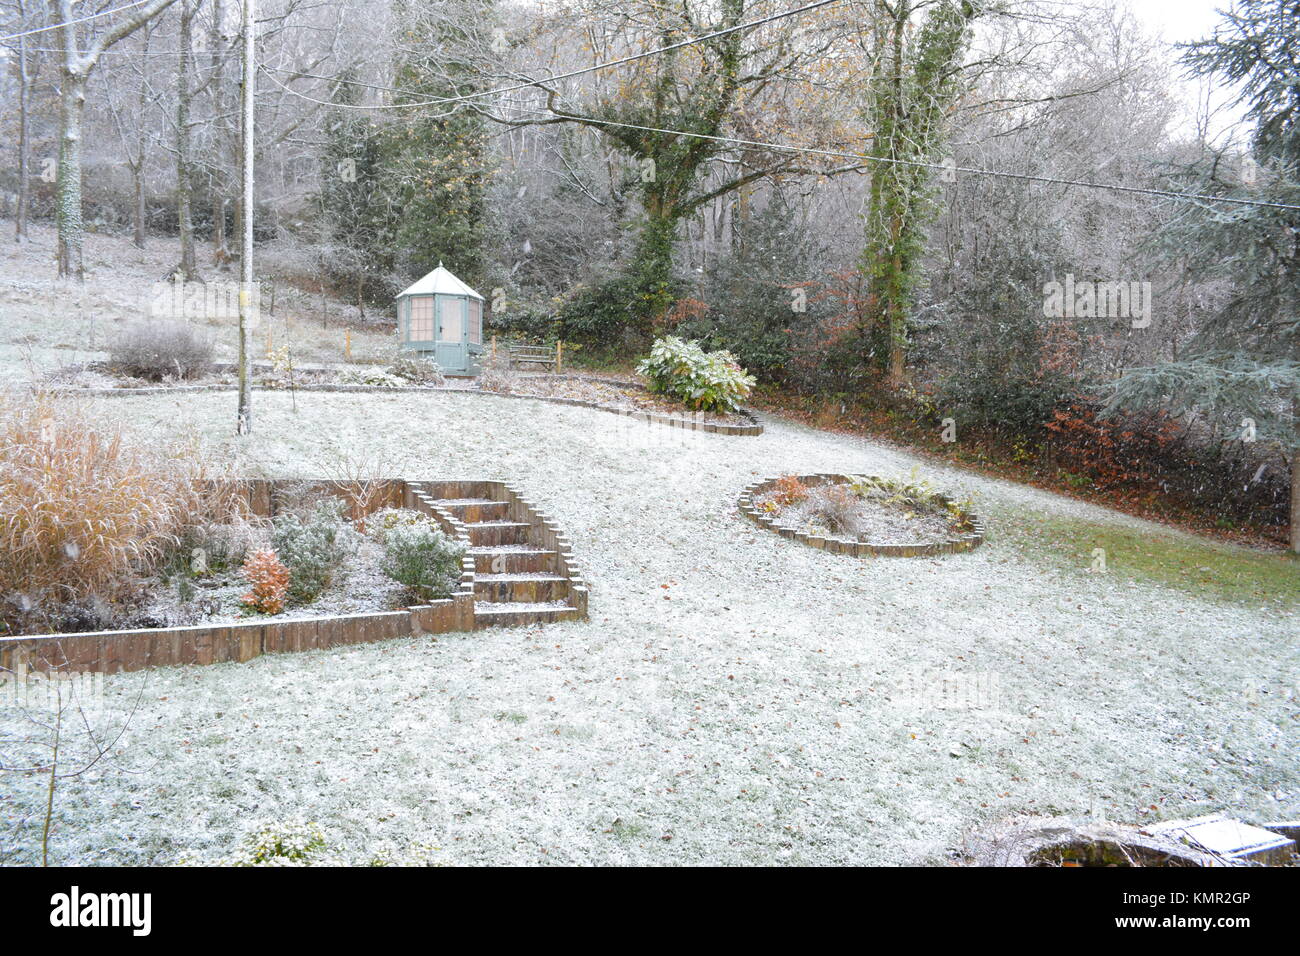 Großen abfallenden Garten mit Gartenhaus im Winter mit einer leichten Schneedecke auf dem Rasen Sträucher Bäume Sträucher und Betten in South herefordshire England Großbritannien Stockfoto